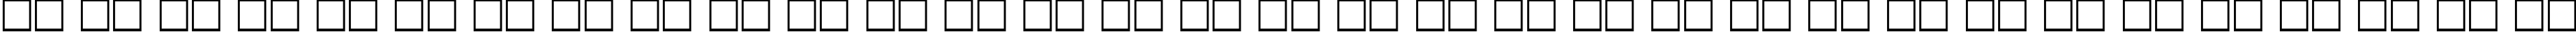 Пример написания русского алфавита шрифтом Pengvin Bold